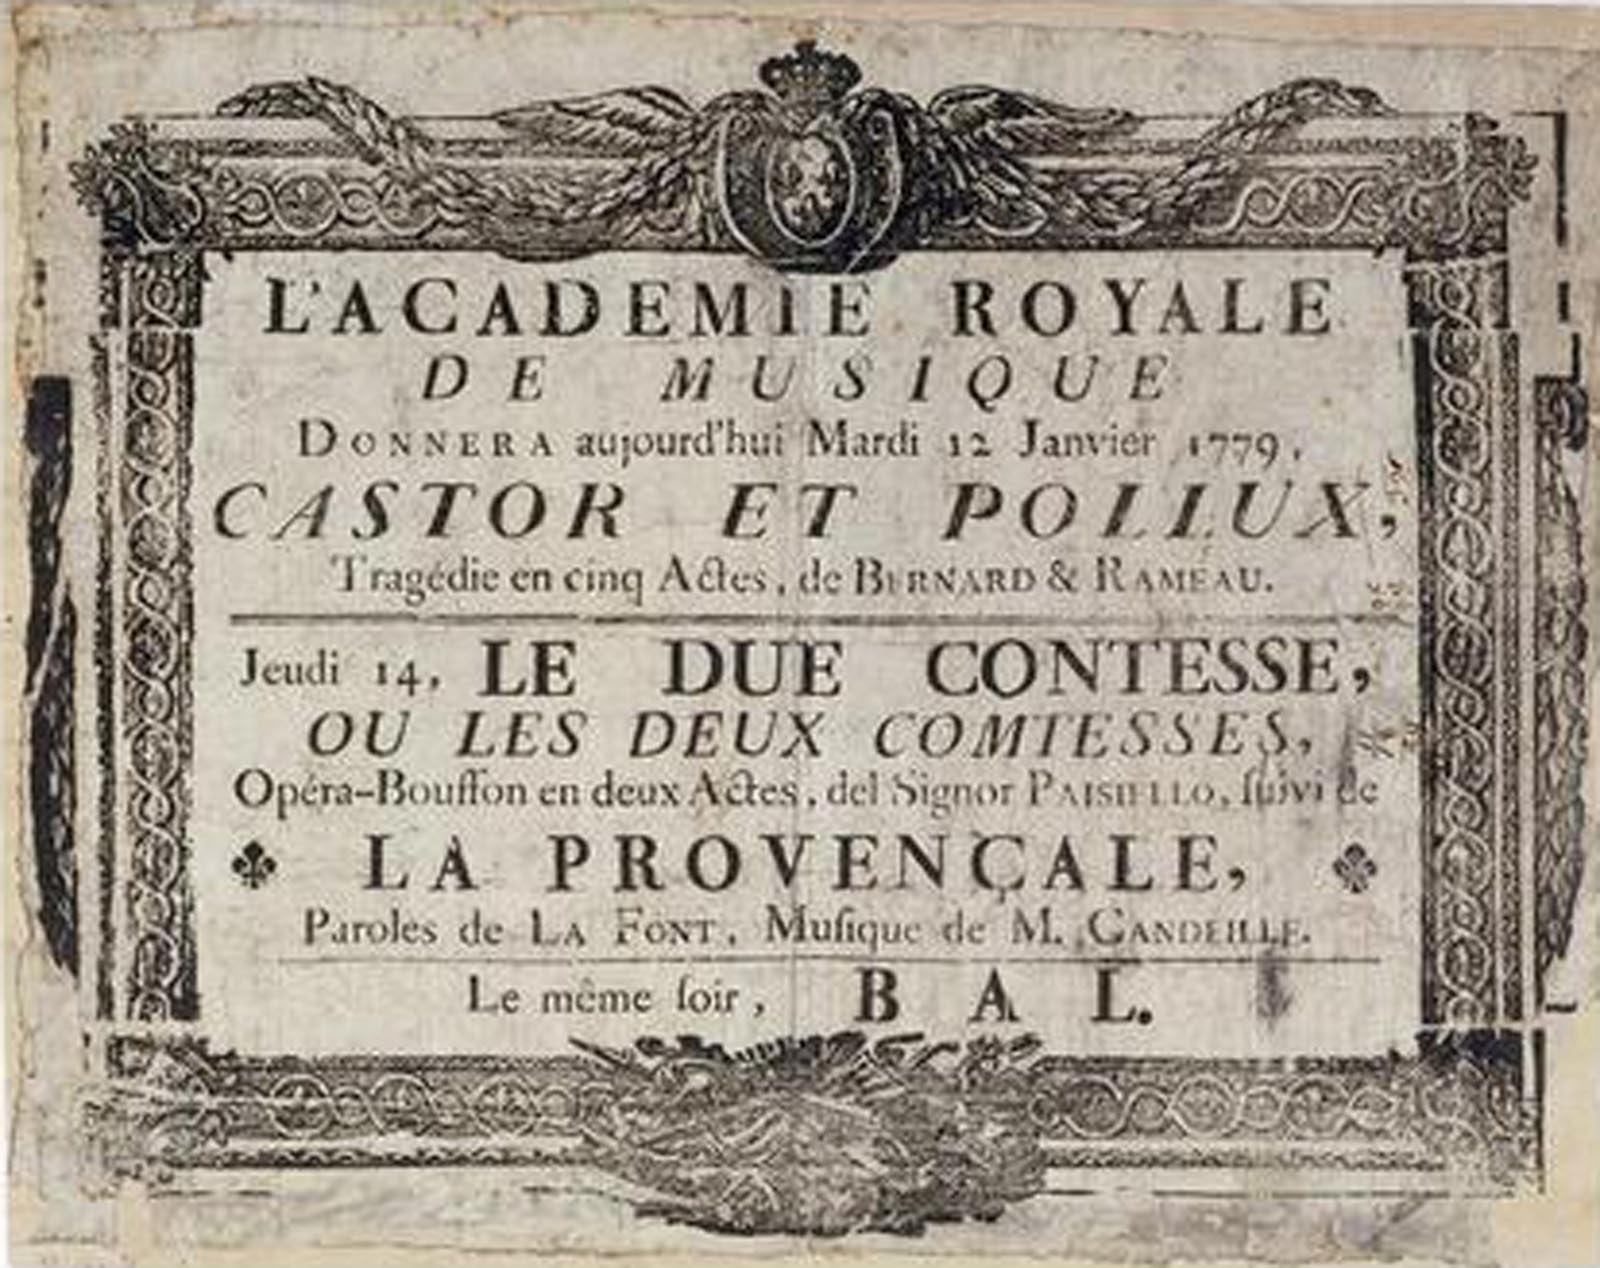 Affiche annonçant la représentation du spectacle Castor et Pollux de Rameau à l'Académie royale de Musique.